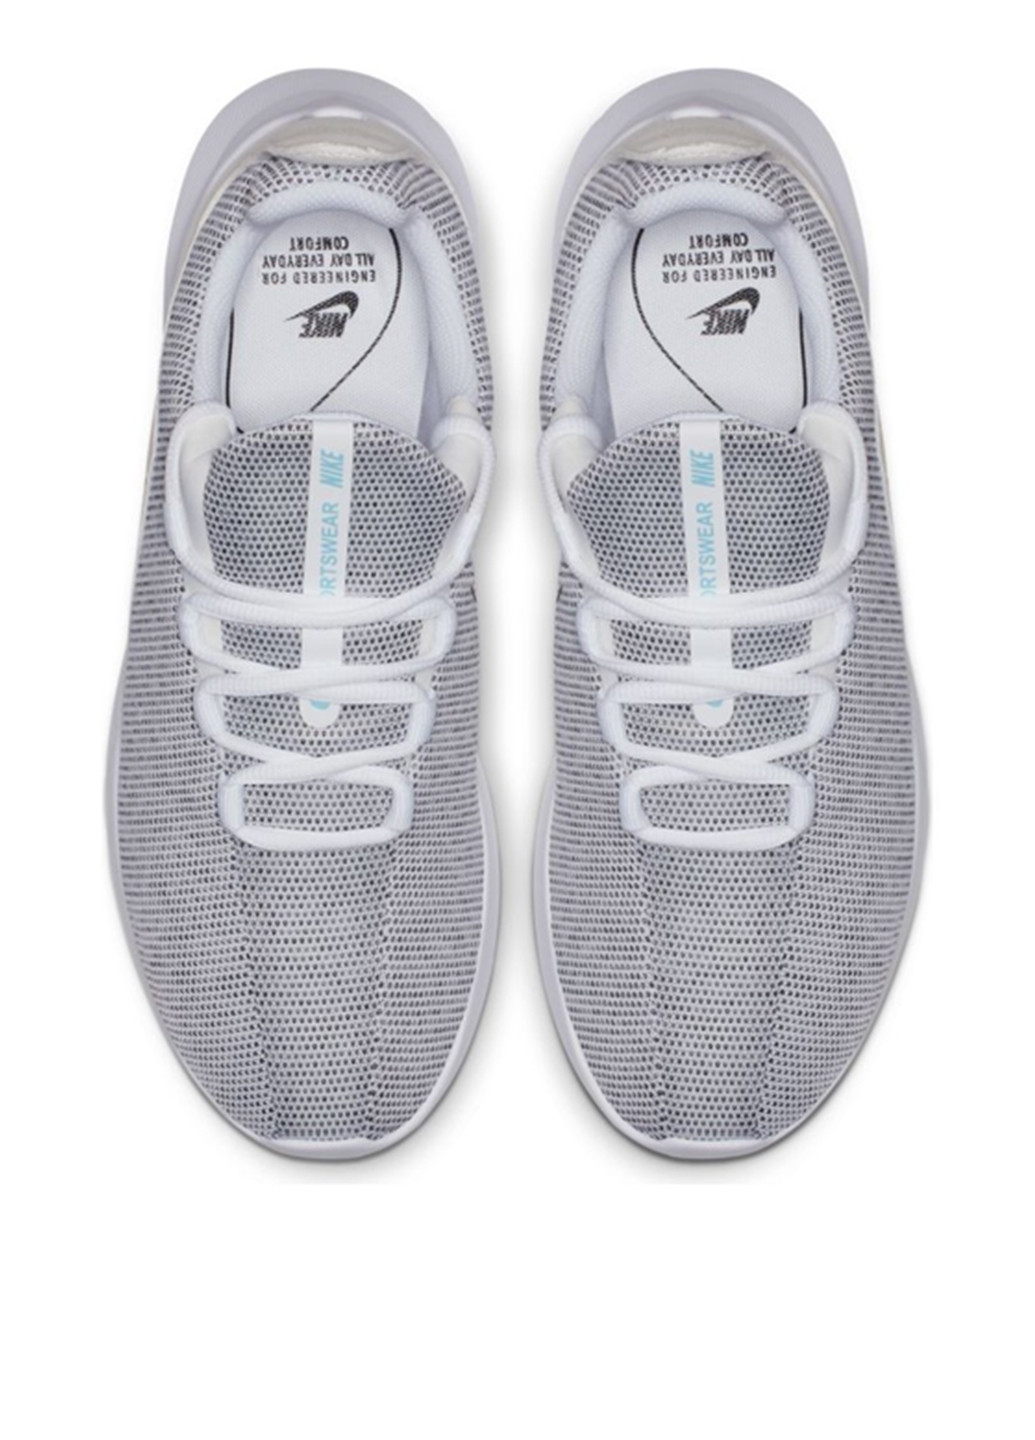 Белые демисезонные кроссовки Nike Viale Premium